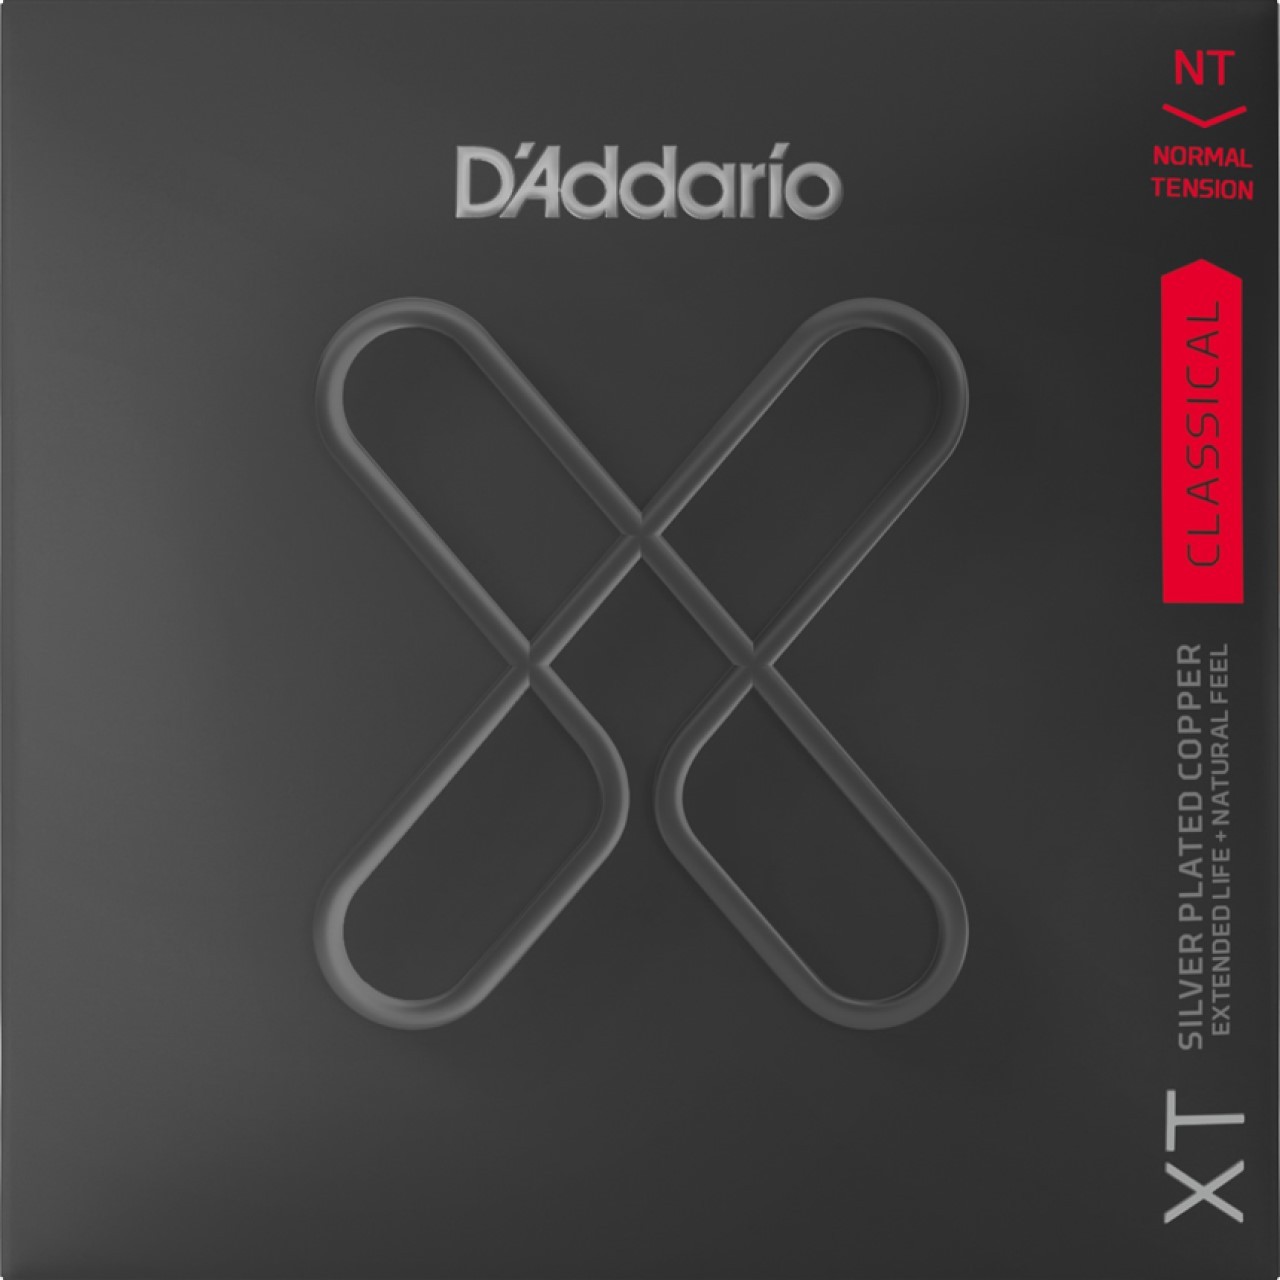 D'Addario XTC45 XTC45 クラシックギター弦 XT コーティング弦 Composite Normal Tension ダダリオ 【  成田ボンベルタ店 】 | 島村楽器オンラインストア